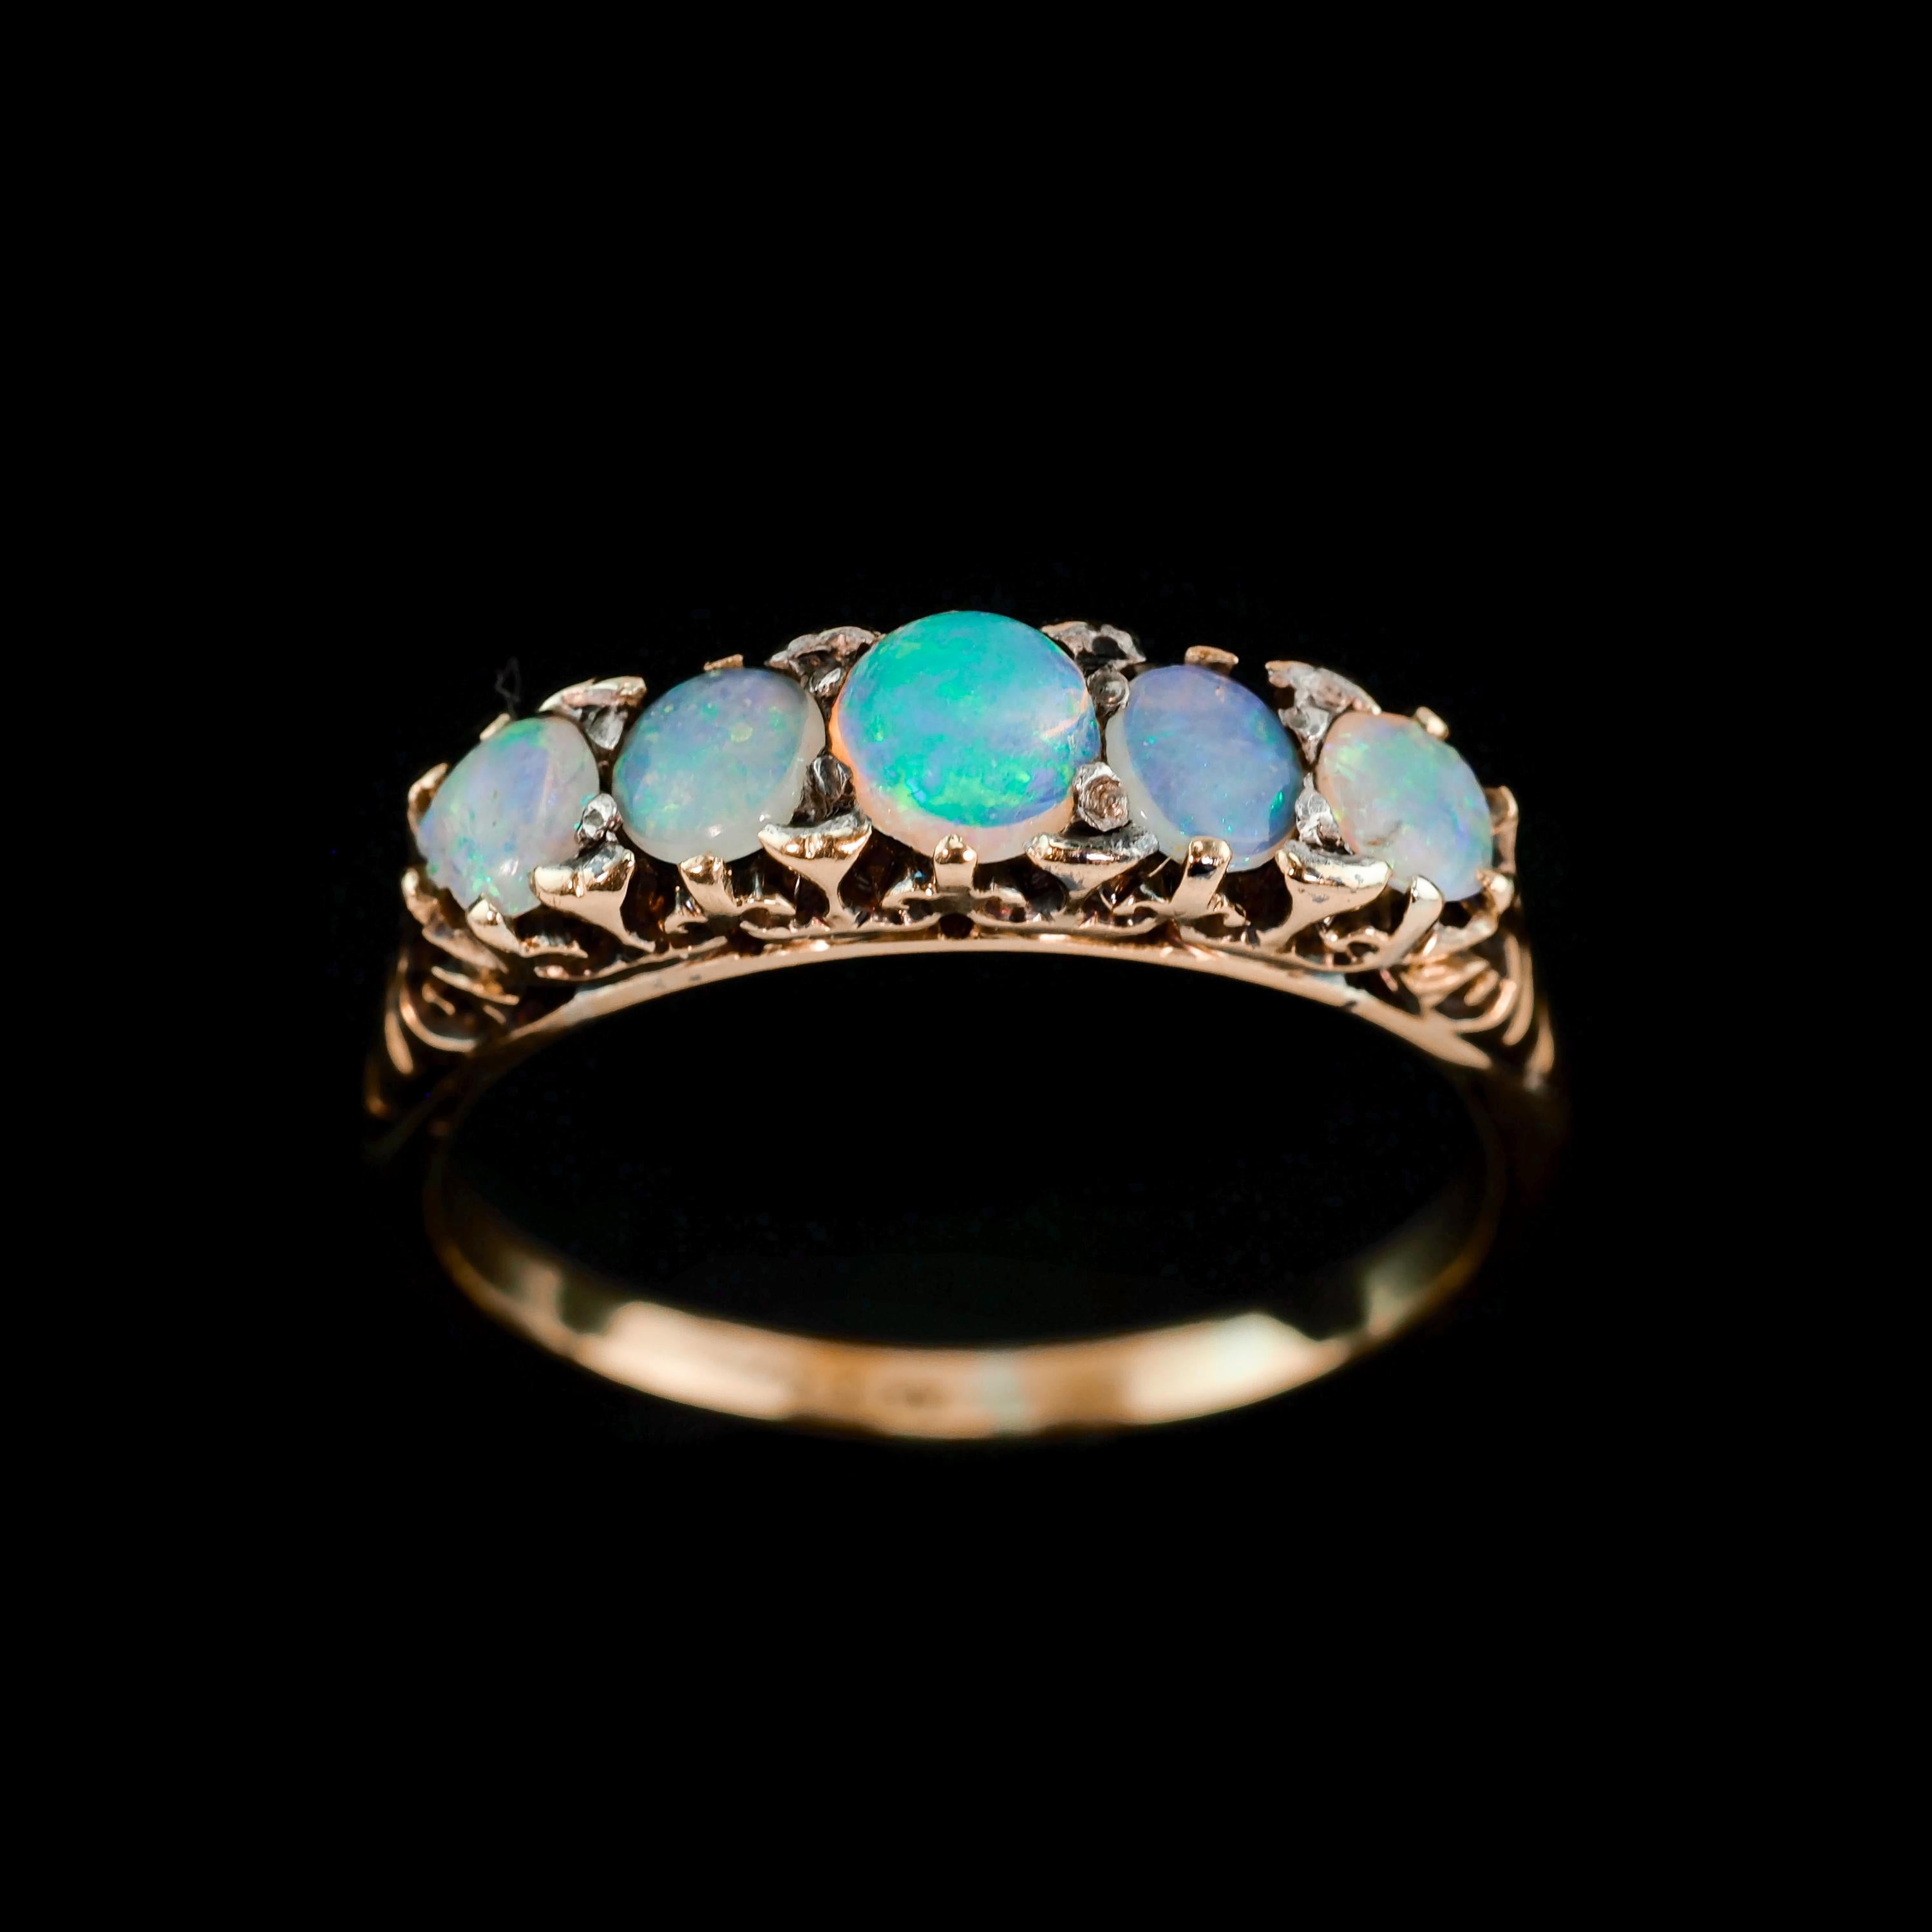 Antique Opal 14K Gold Ring with 5 Cabochons & Fleur-de-lis - Victorian c.1890 7